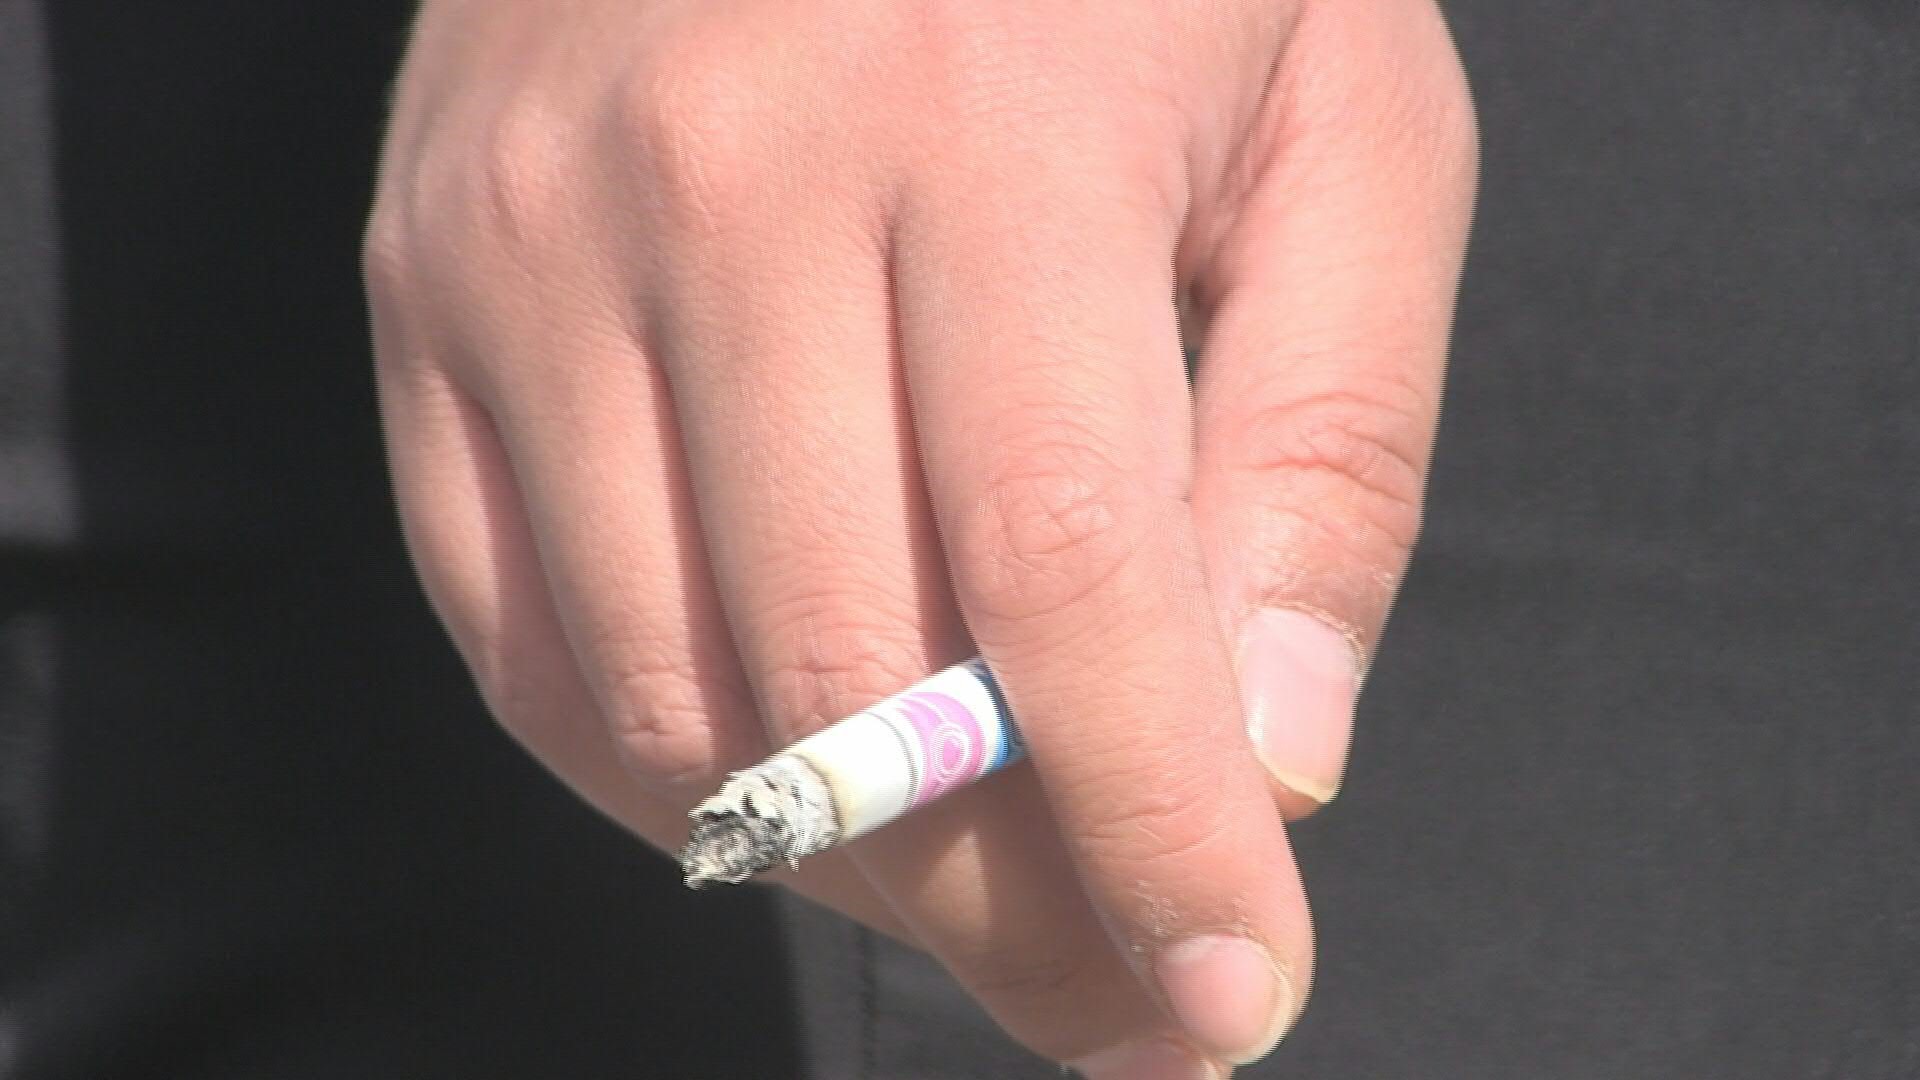 Los vapeadores contienen nicotina y otras sustancias nocivas. (Foto: AFP)